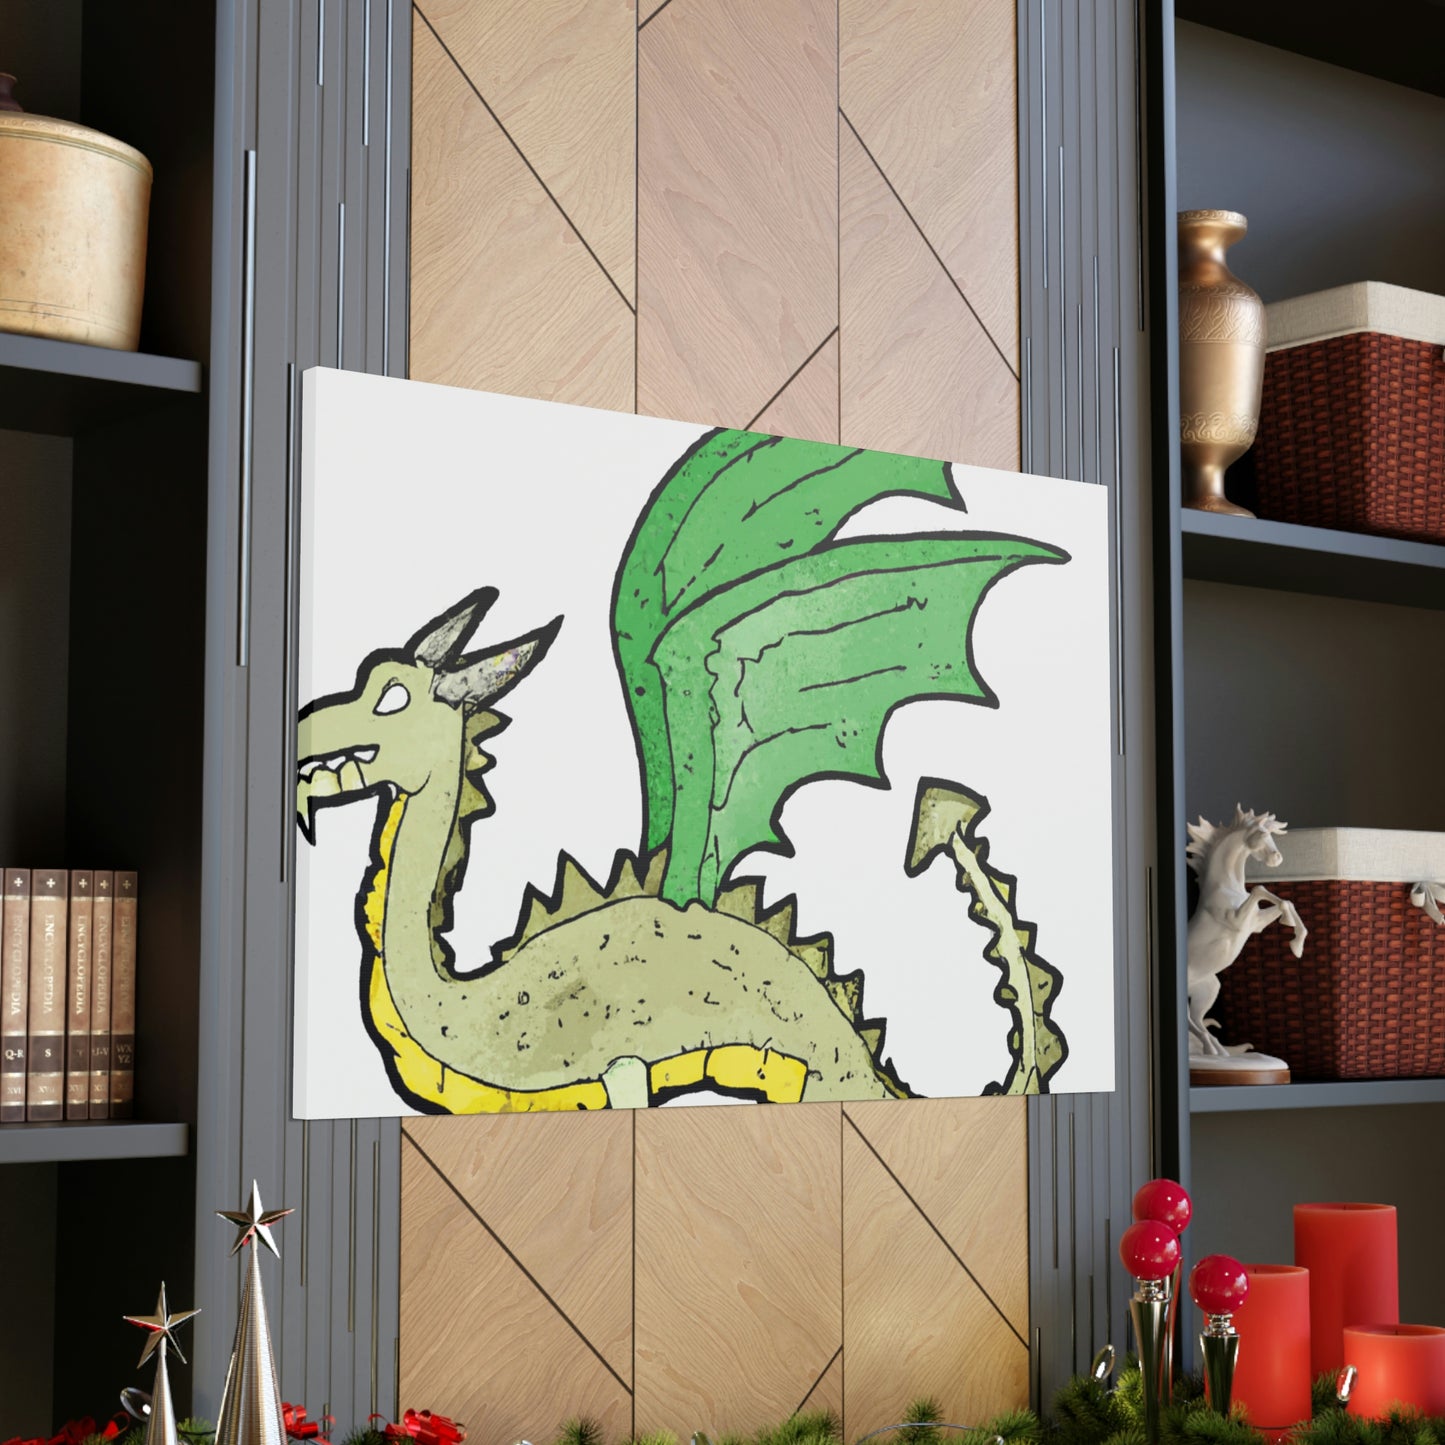 Sir/Dame Agustin Temeraire - Dragon Collector Canvas Wall Art